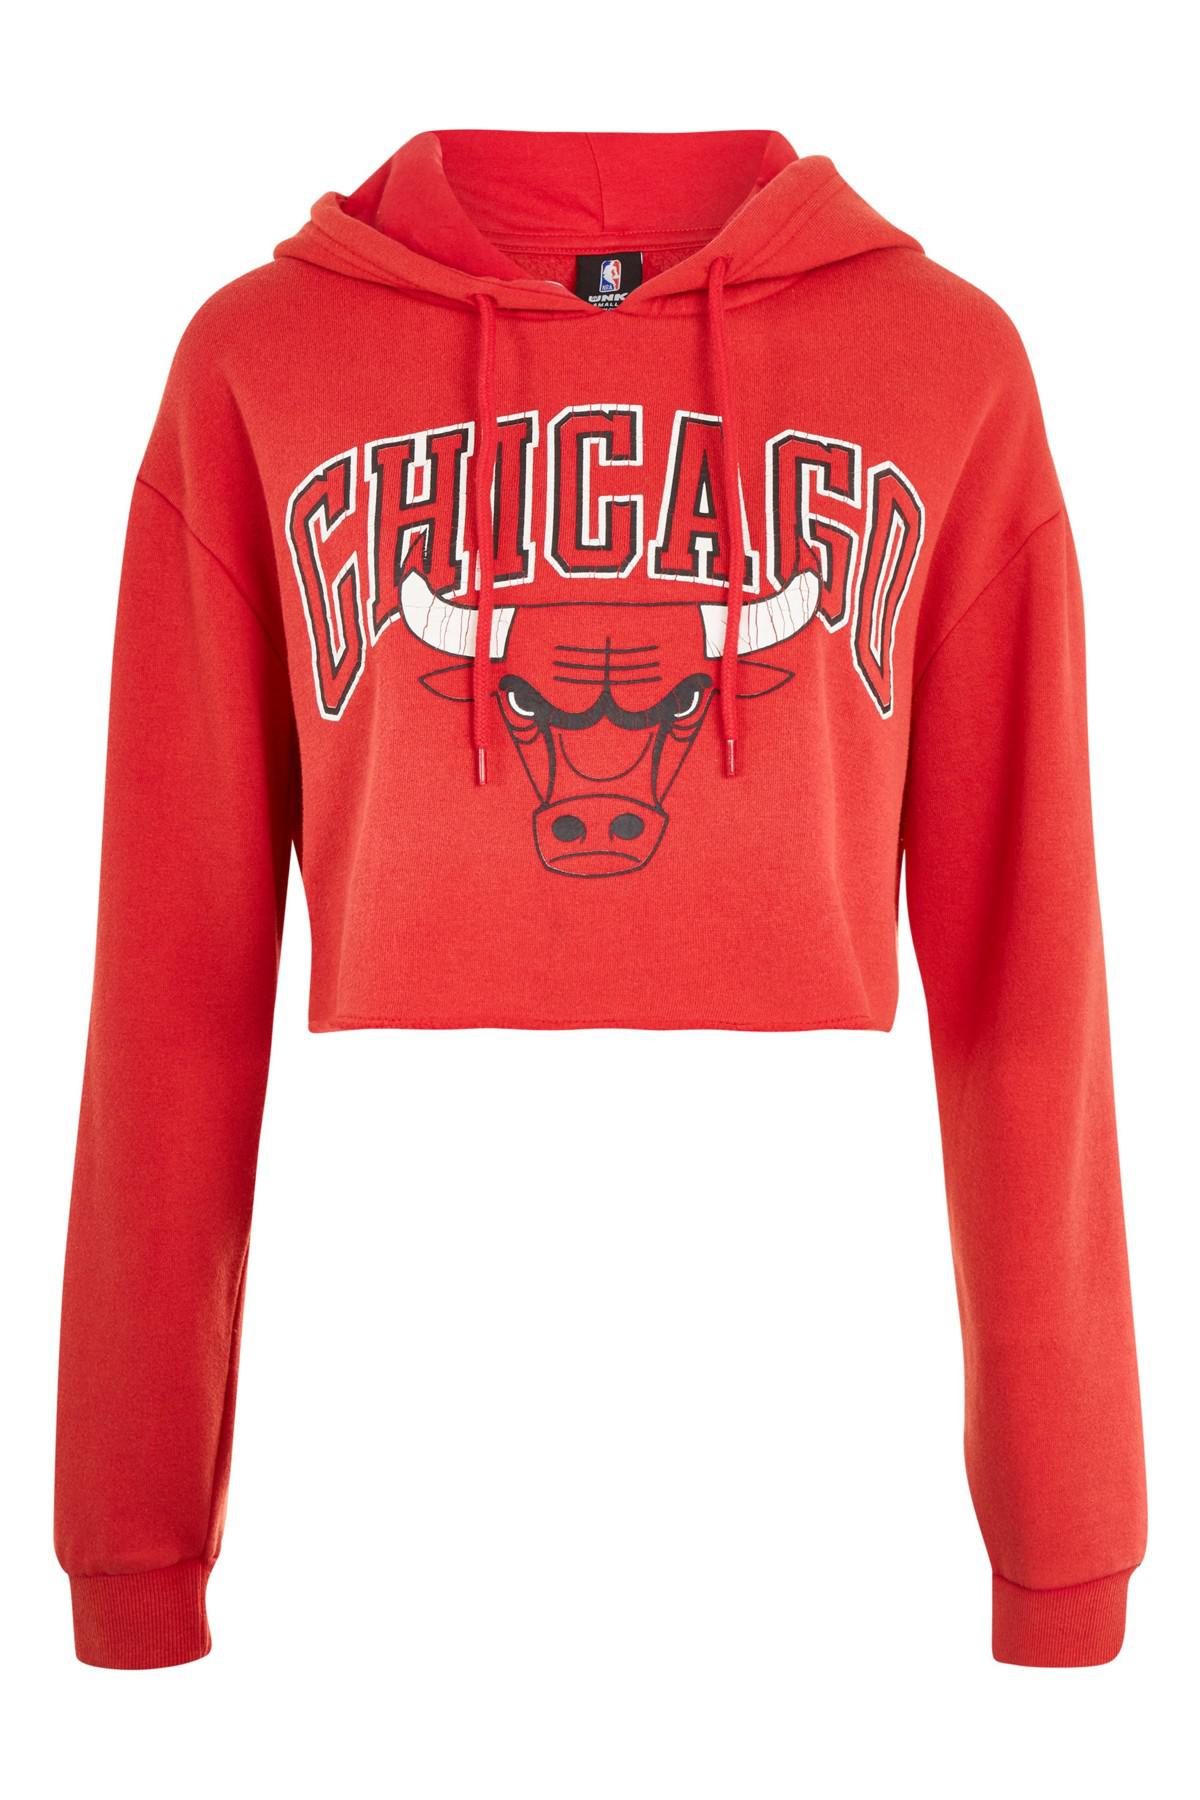 chicago bulls sweater women's